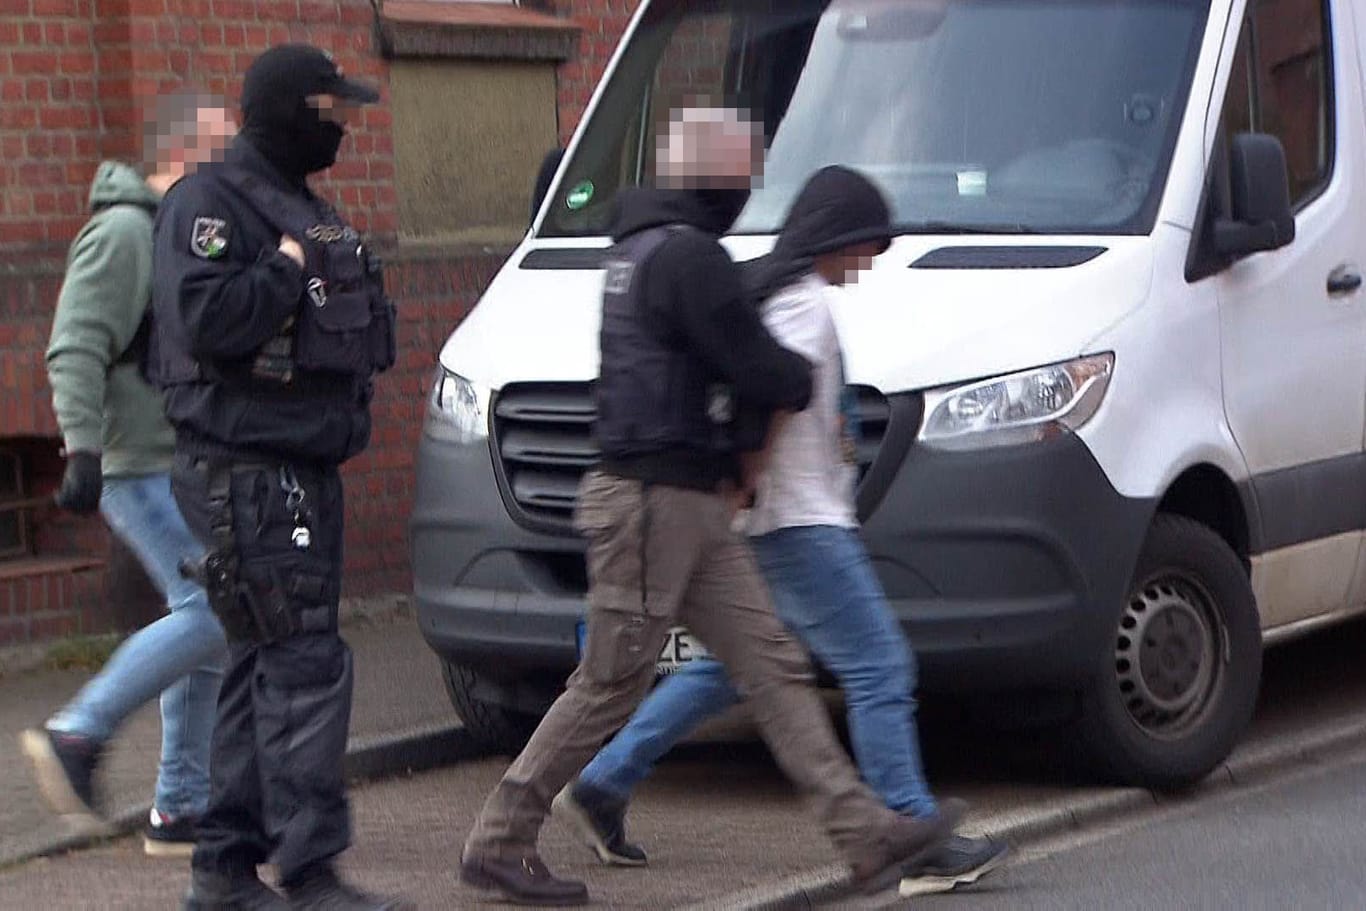 Einsatzkräfte des SEK: In Dortmund wurden Wohn- und Geschäftshäuser durchsucht. Fünf Männer wurden festgenommen.